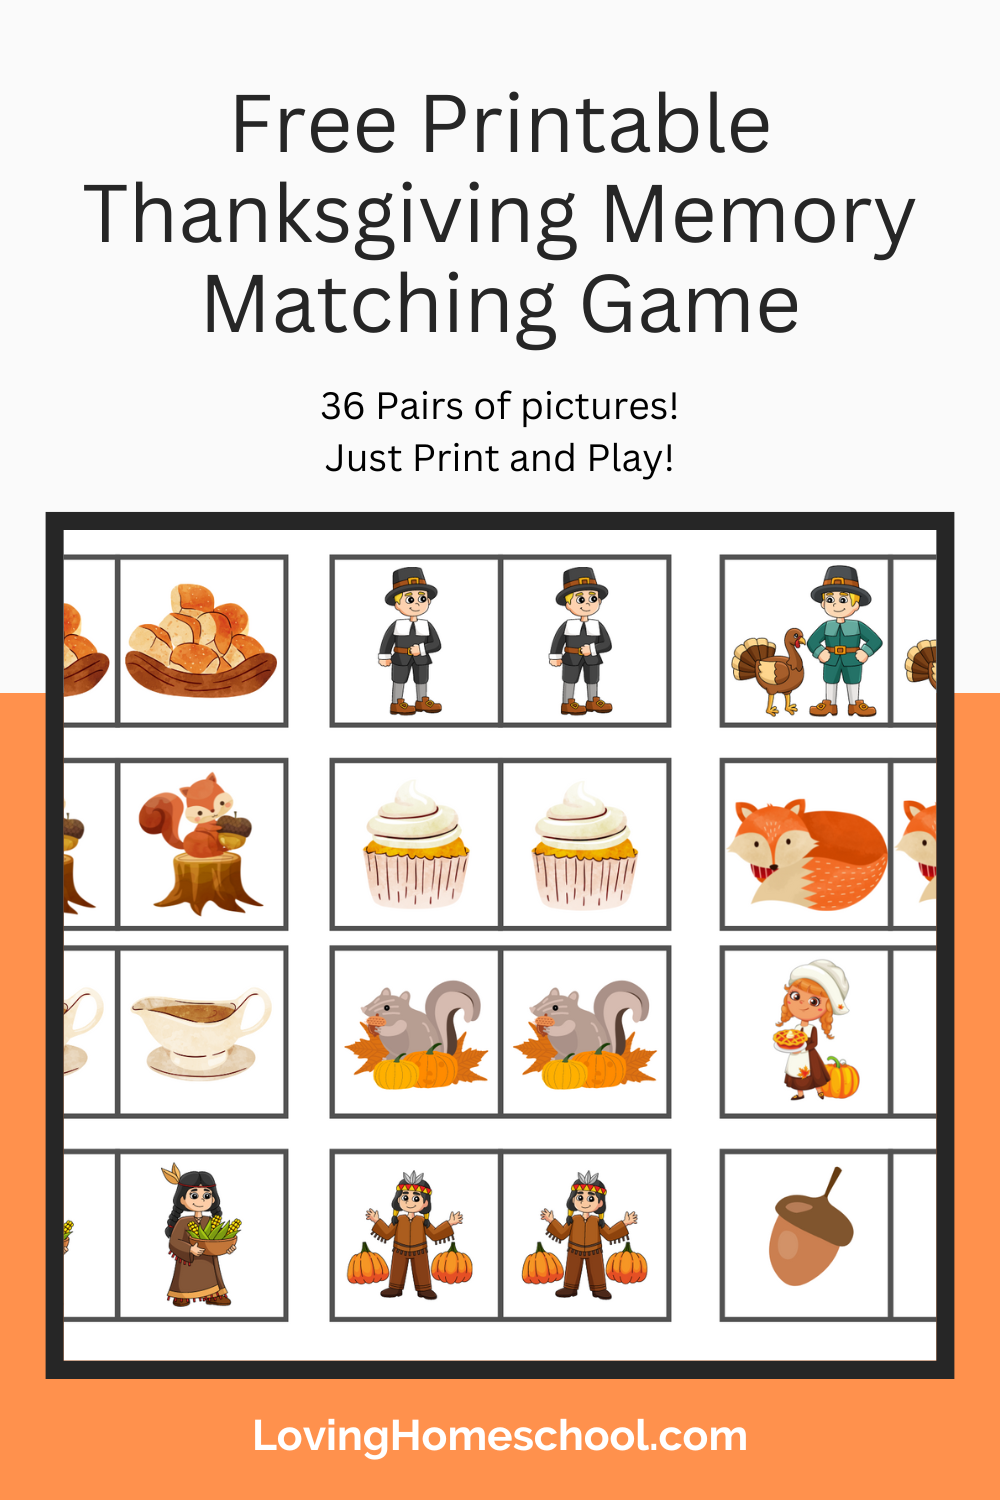 Free Printable Thanksgiving Memory Matching Game